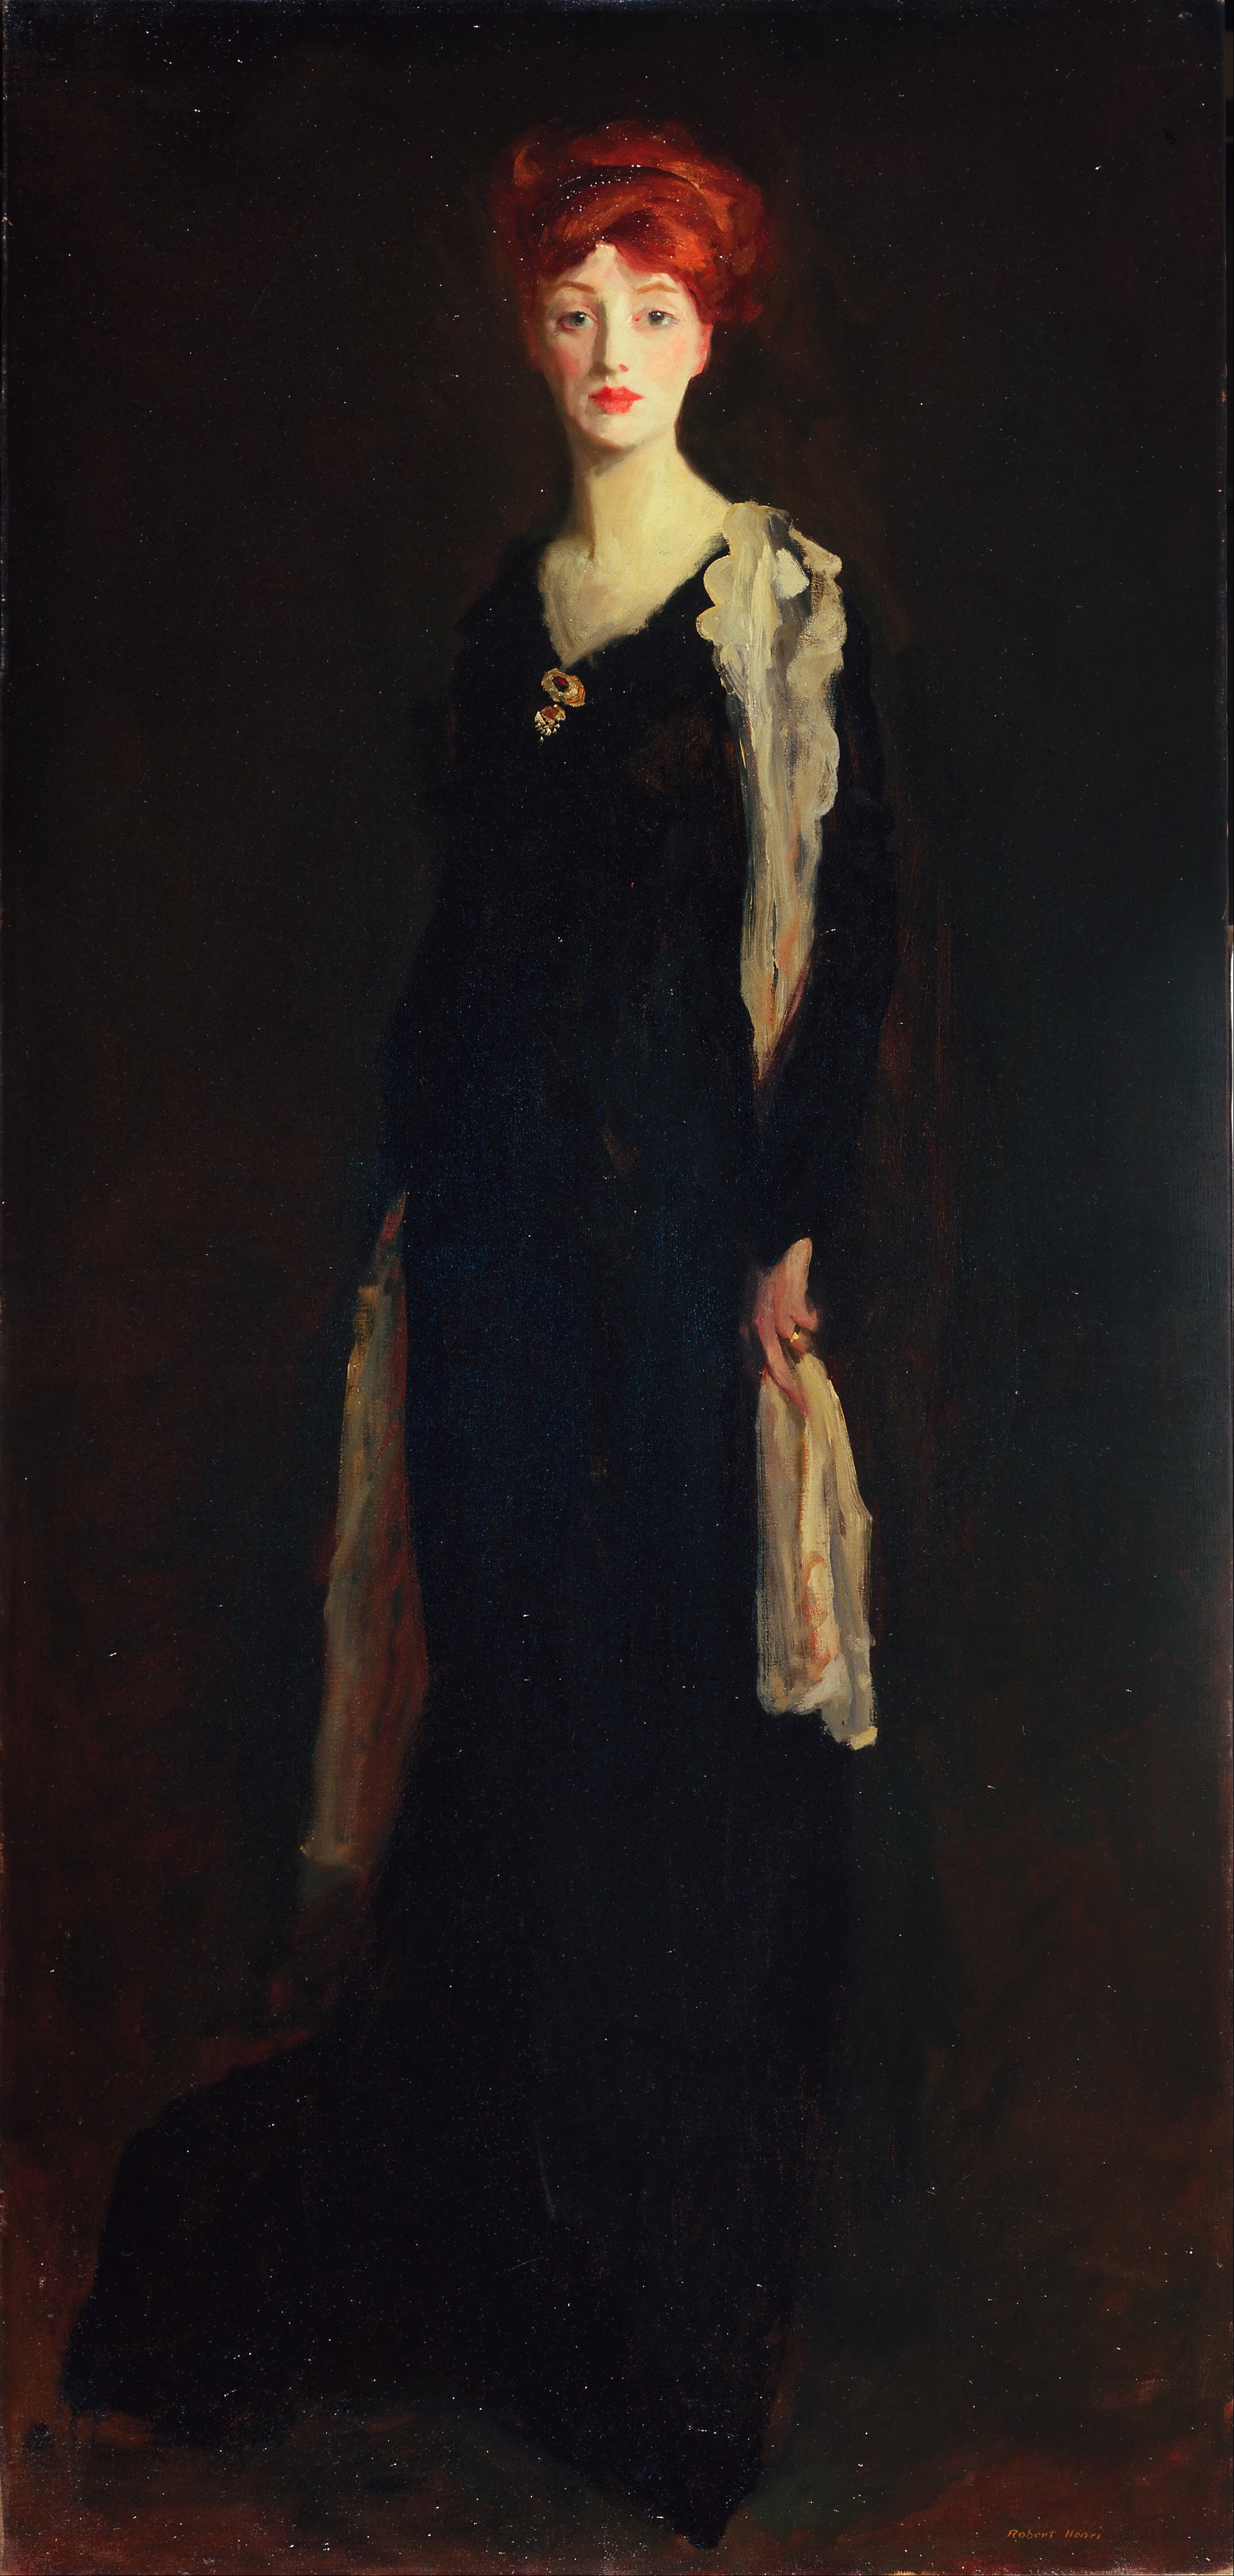 Леди в черном с испанской накидкой (O в черном, с шарфом) by Robert Henri - 1910 - 196.2 x 94 cm 